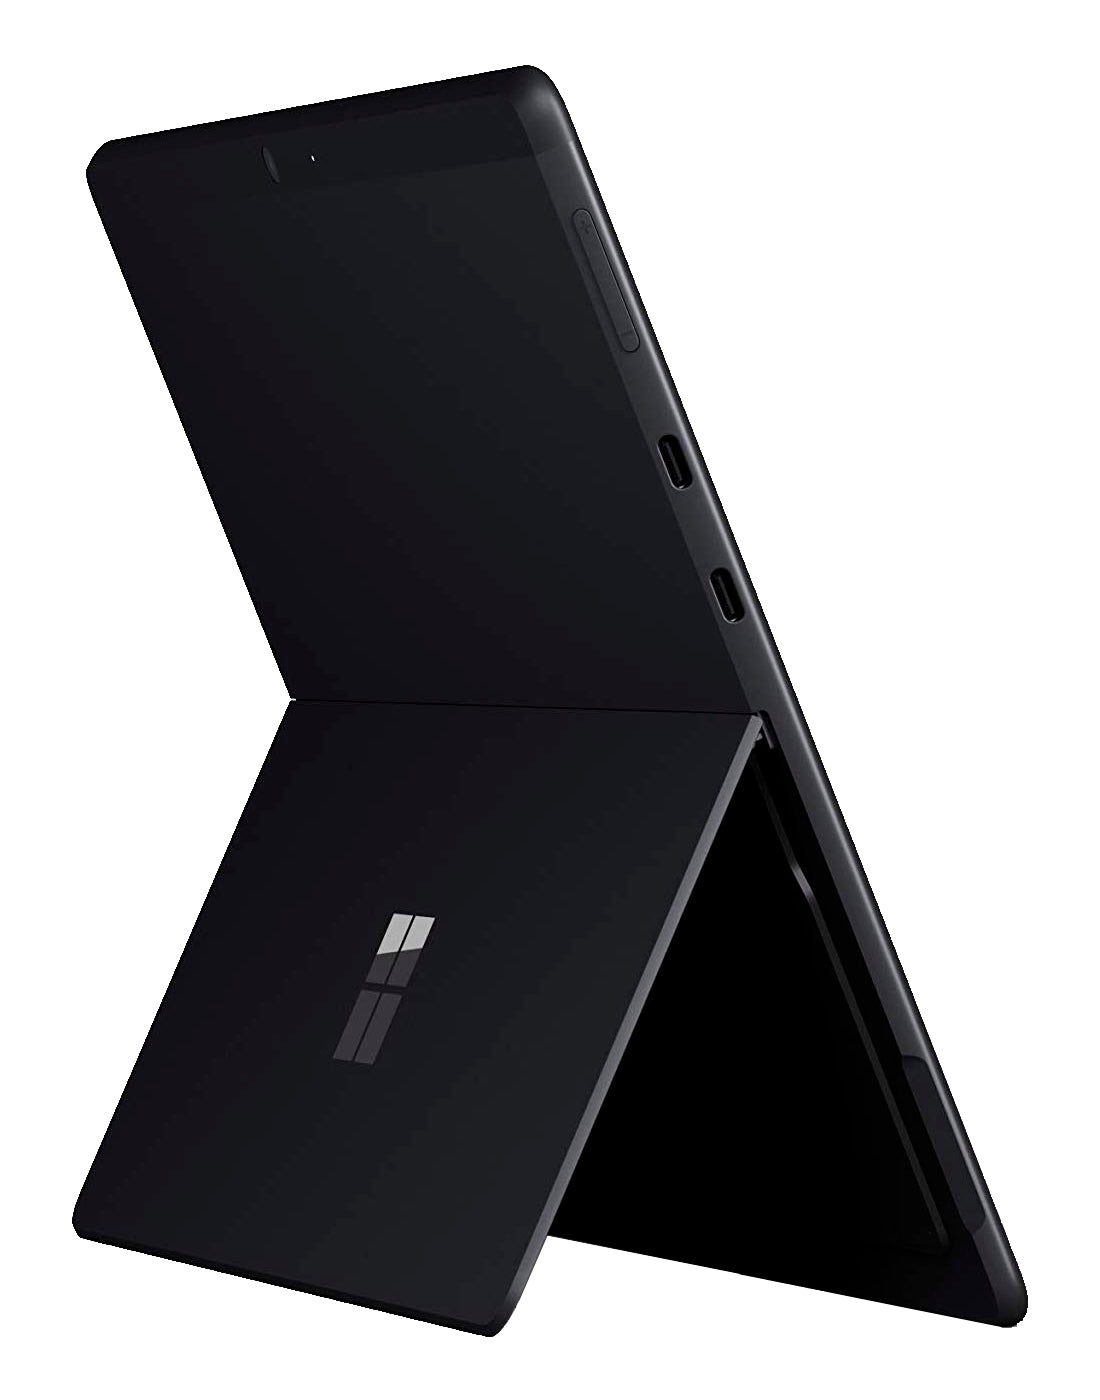 Microsoft Surface Pro X SQ1 Processor 16GB RAM 256GB SSD 13" - Black - New